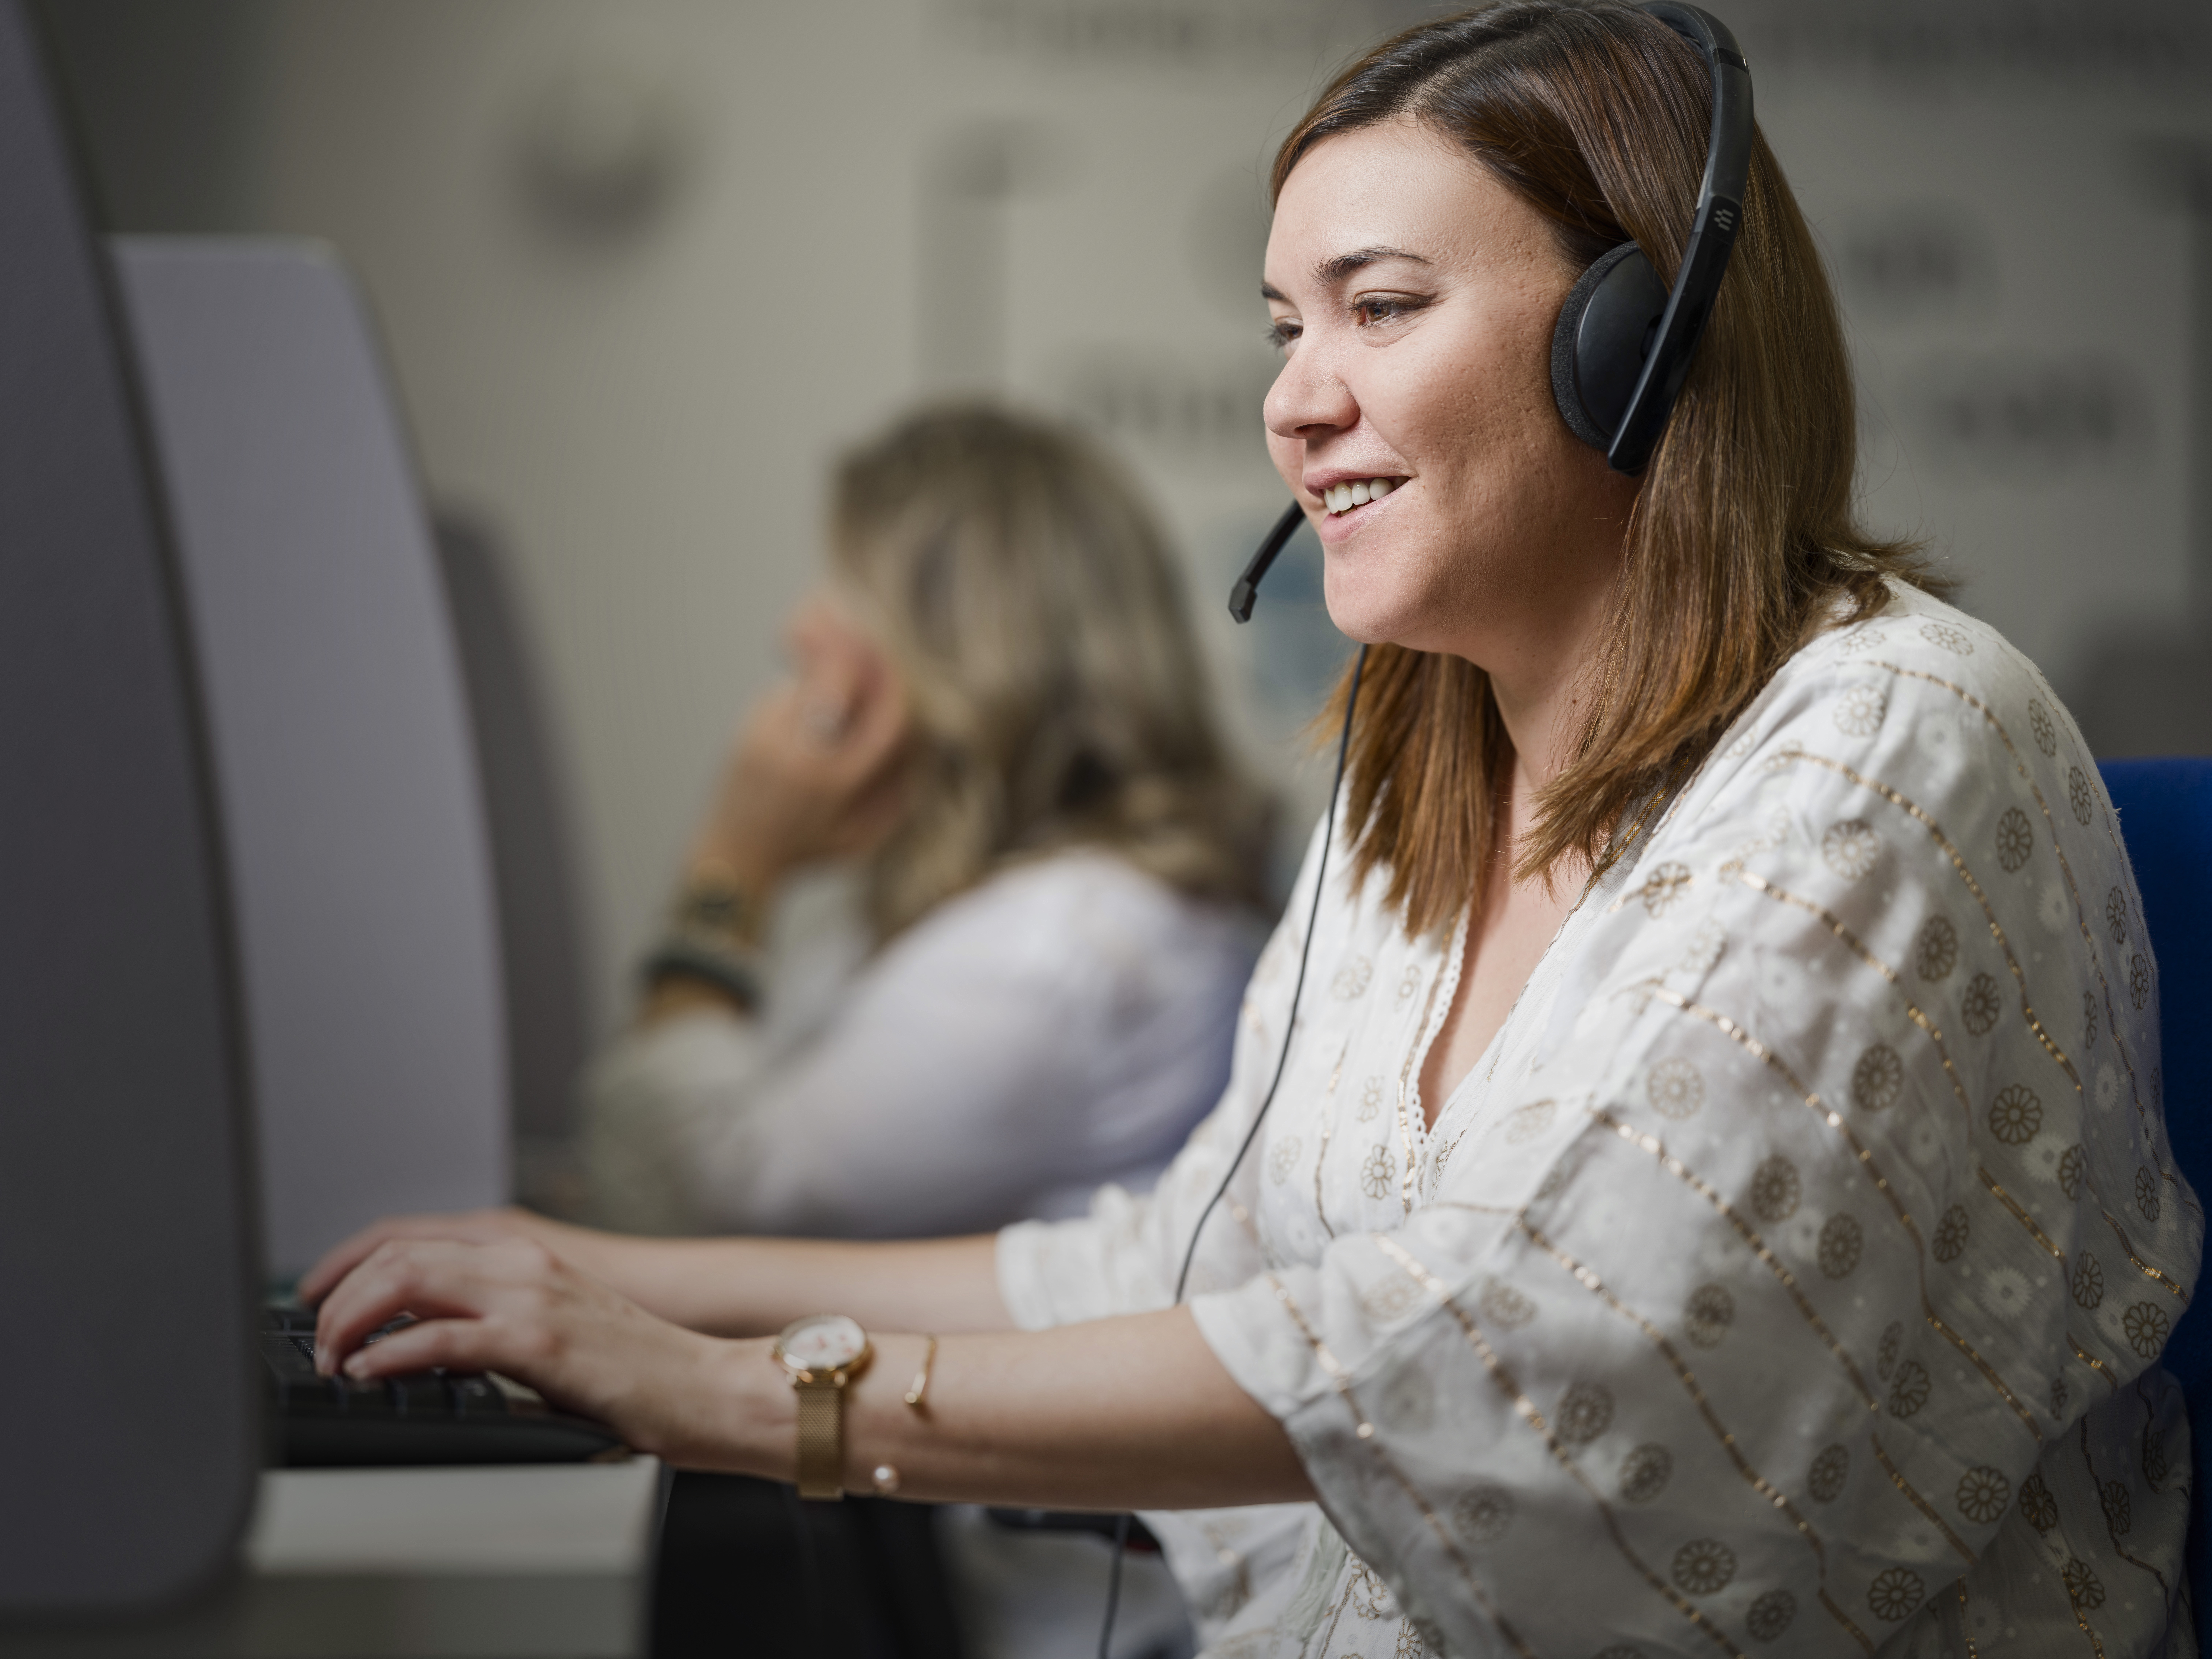 Mujer en primer plano en el call center sentada delante del ordenador, con unos cascos con micro intégranos, atendiendo las llamadas entrantes